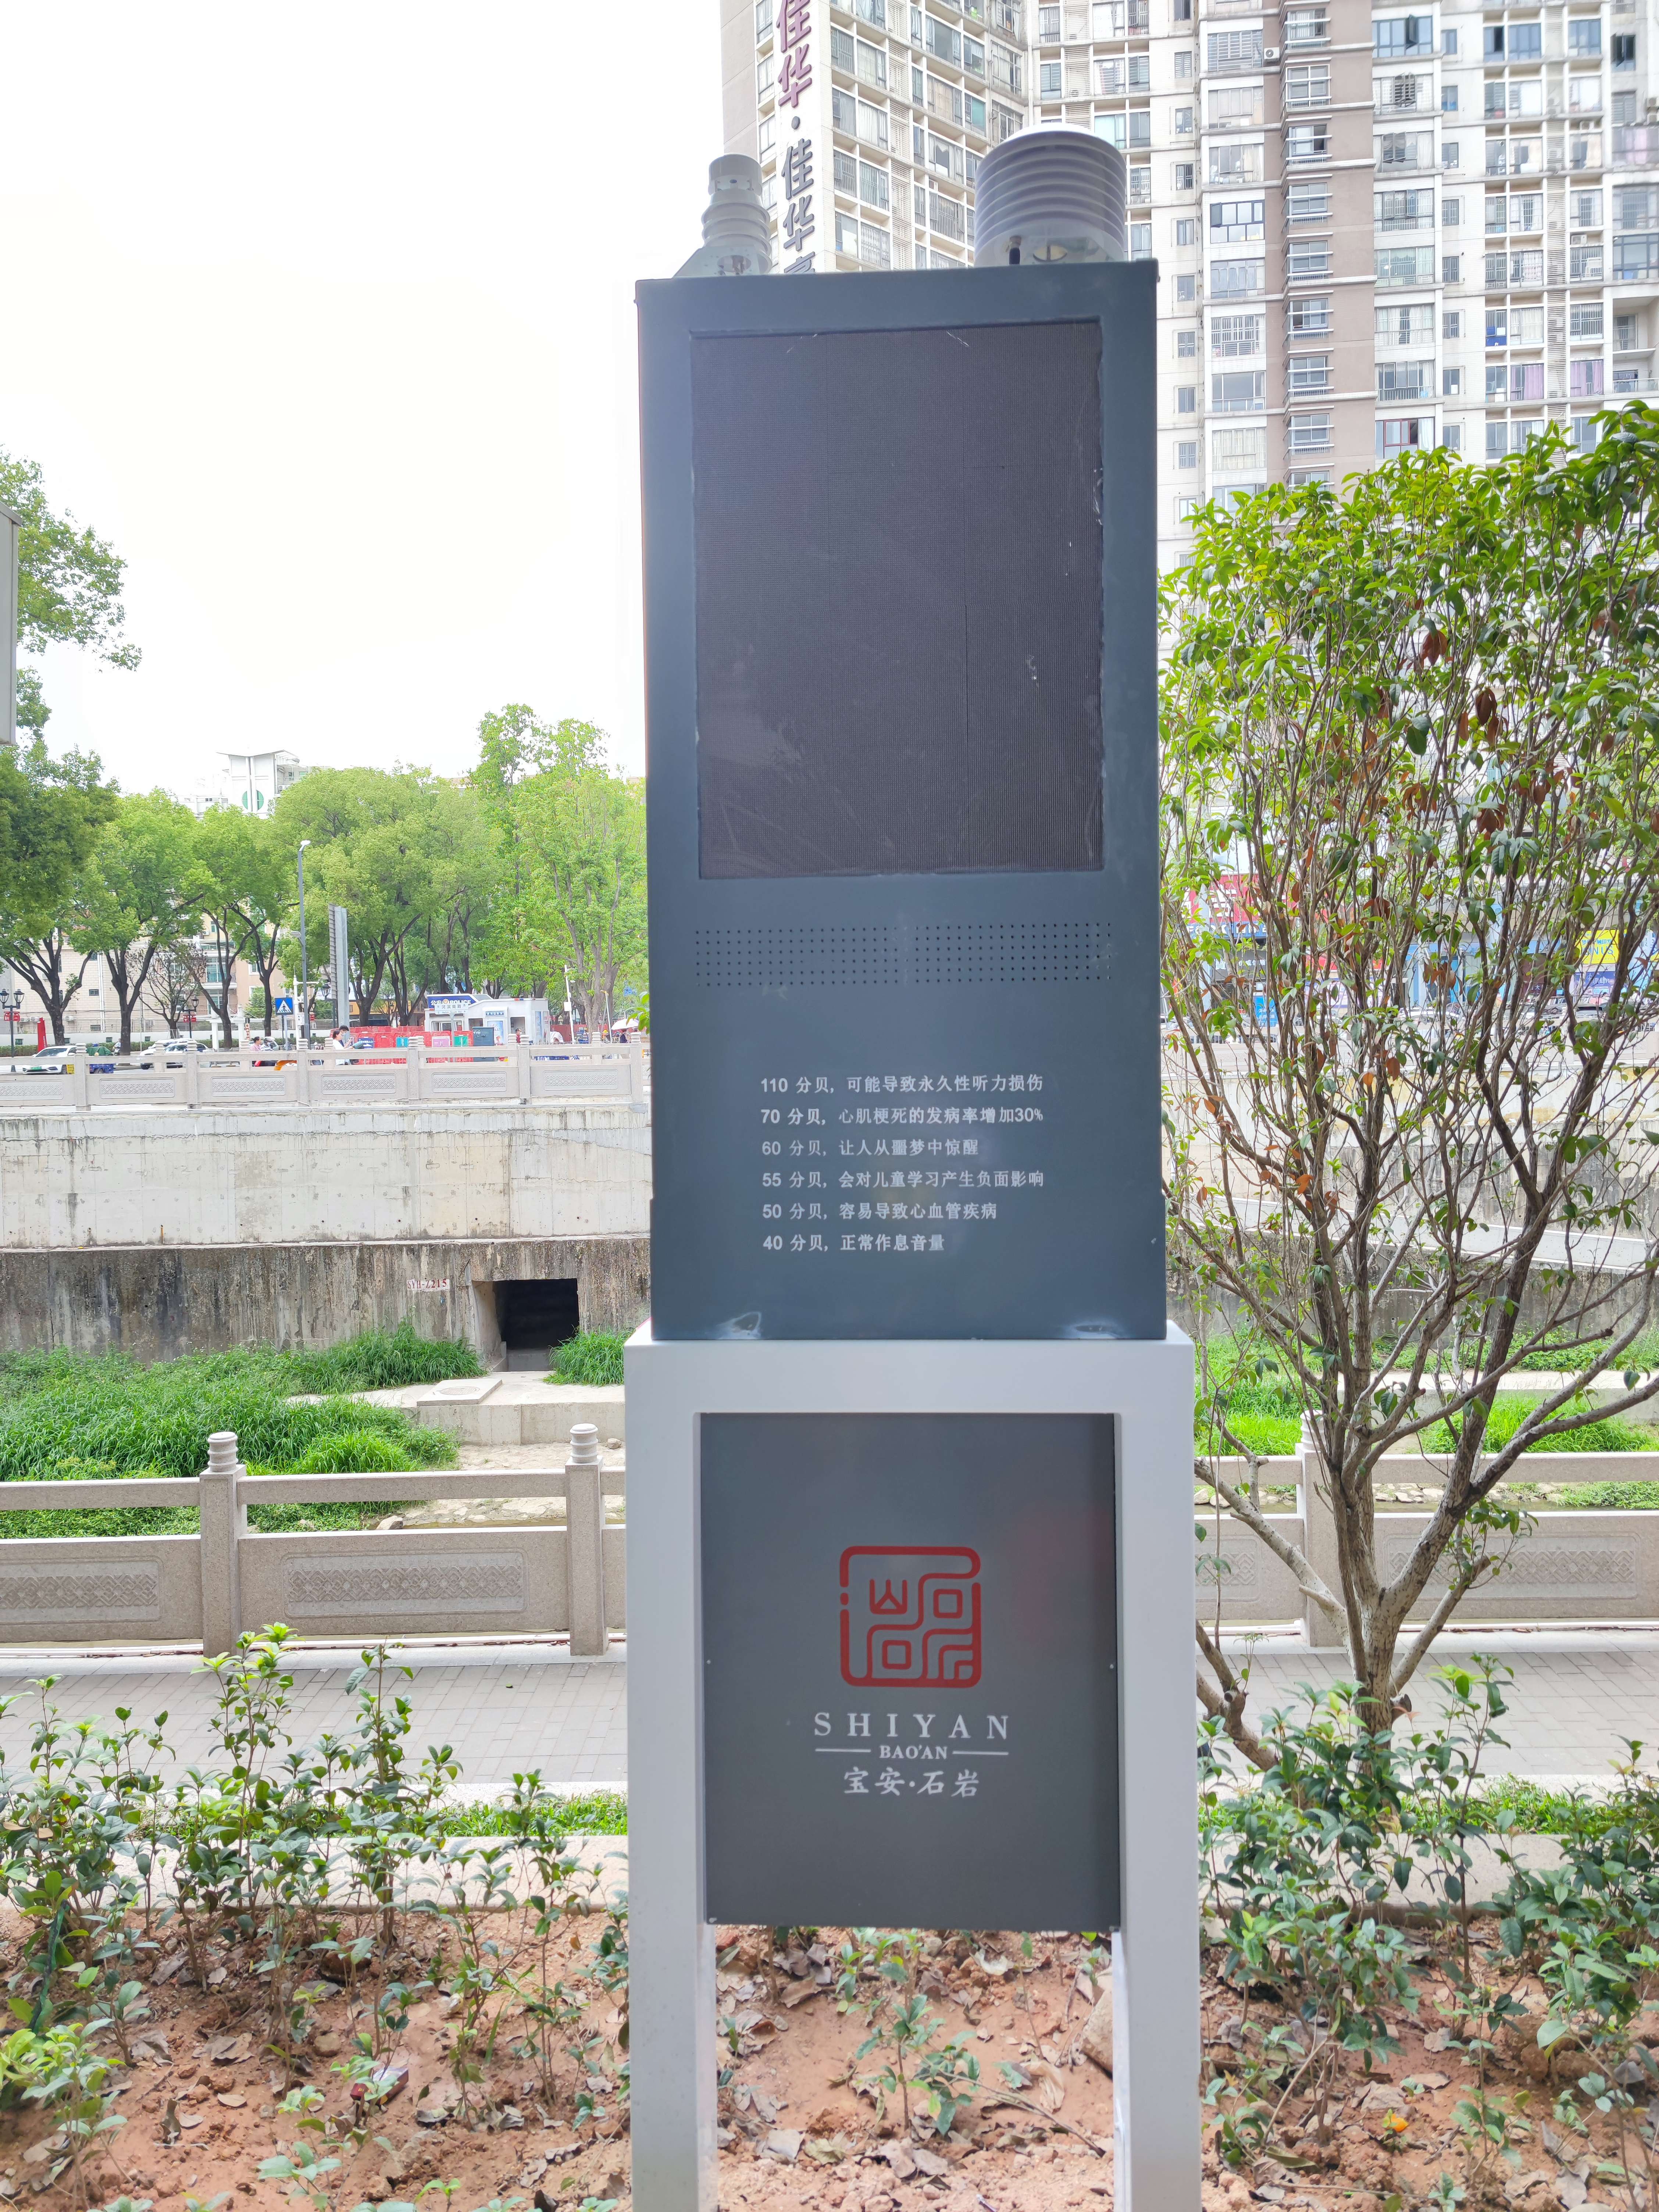 广东商业街噪声超标喊话系统统计分析  全天候噪声超标喊话系统